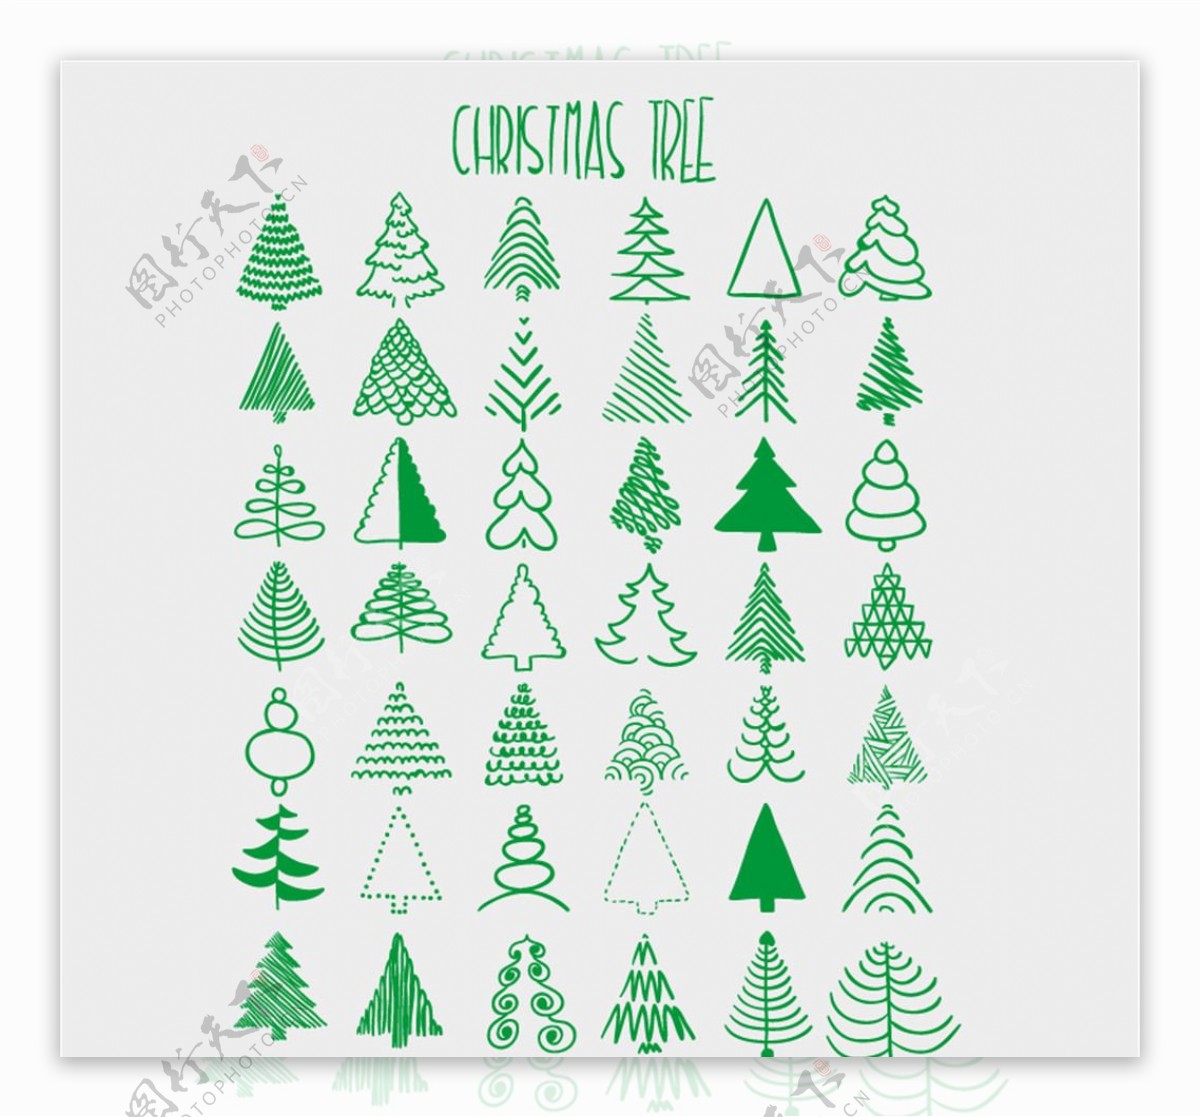 绿色手绘圣诞树矢量素材